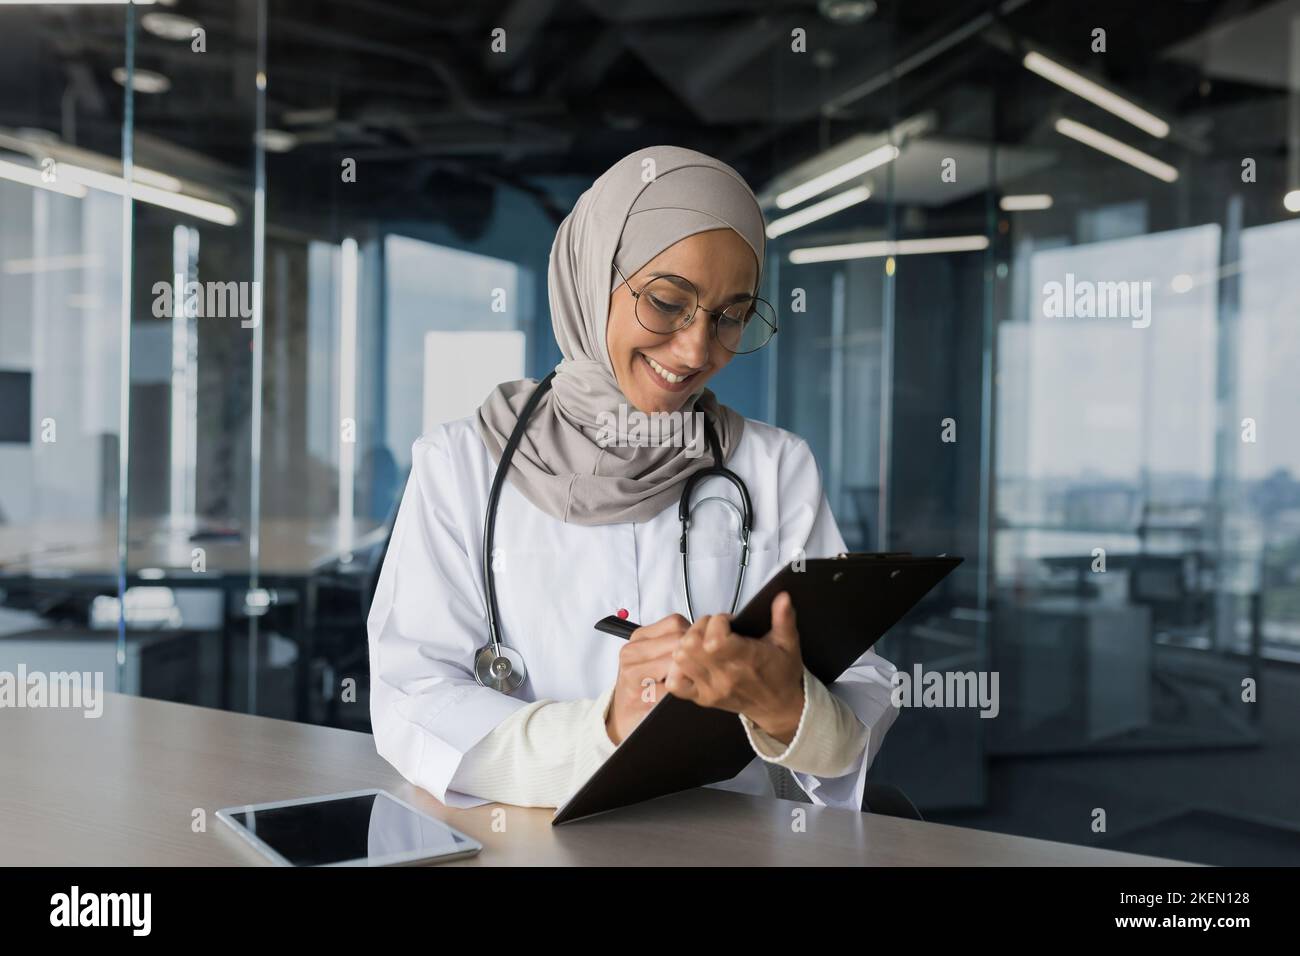 Eine junge schöne arabische Ärztin, eine muslimische Frau, sitzt in einem Hijab mit einem Stethoskop im Büro am Tisch. Arbeitet mit Dokumenten, zeichnet die Krankengeschichte von Patienten auf. Stockfoto